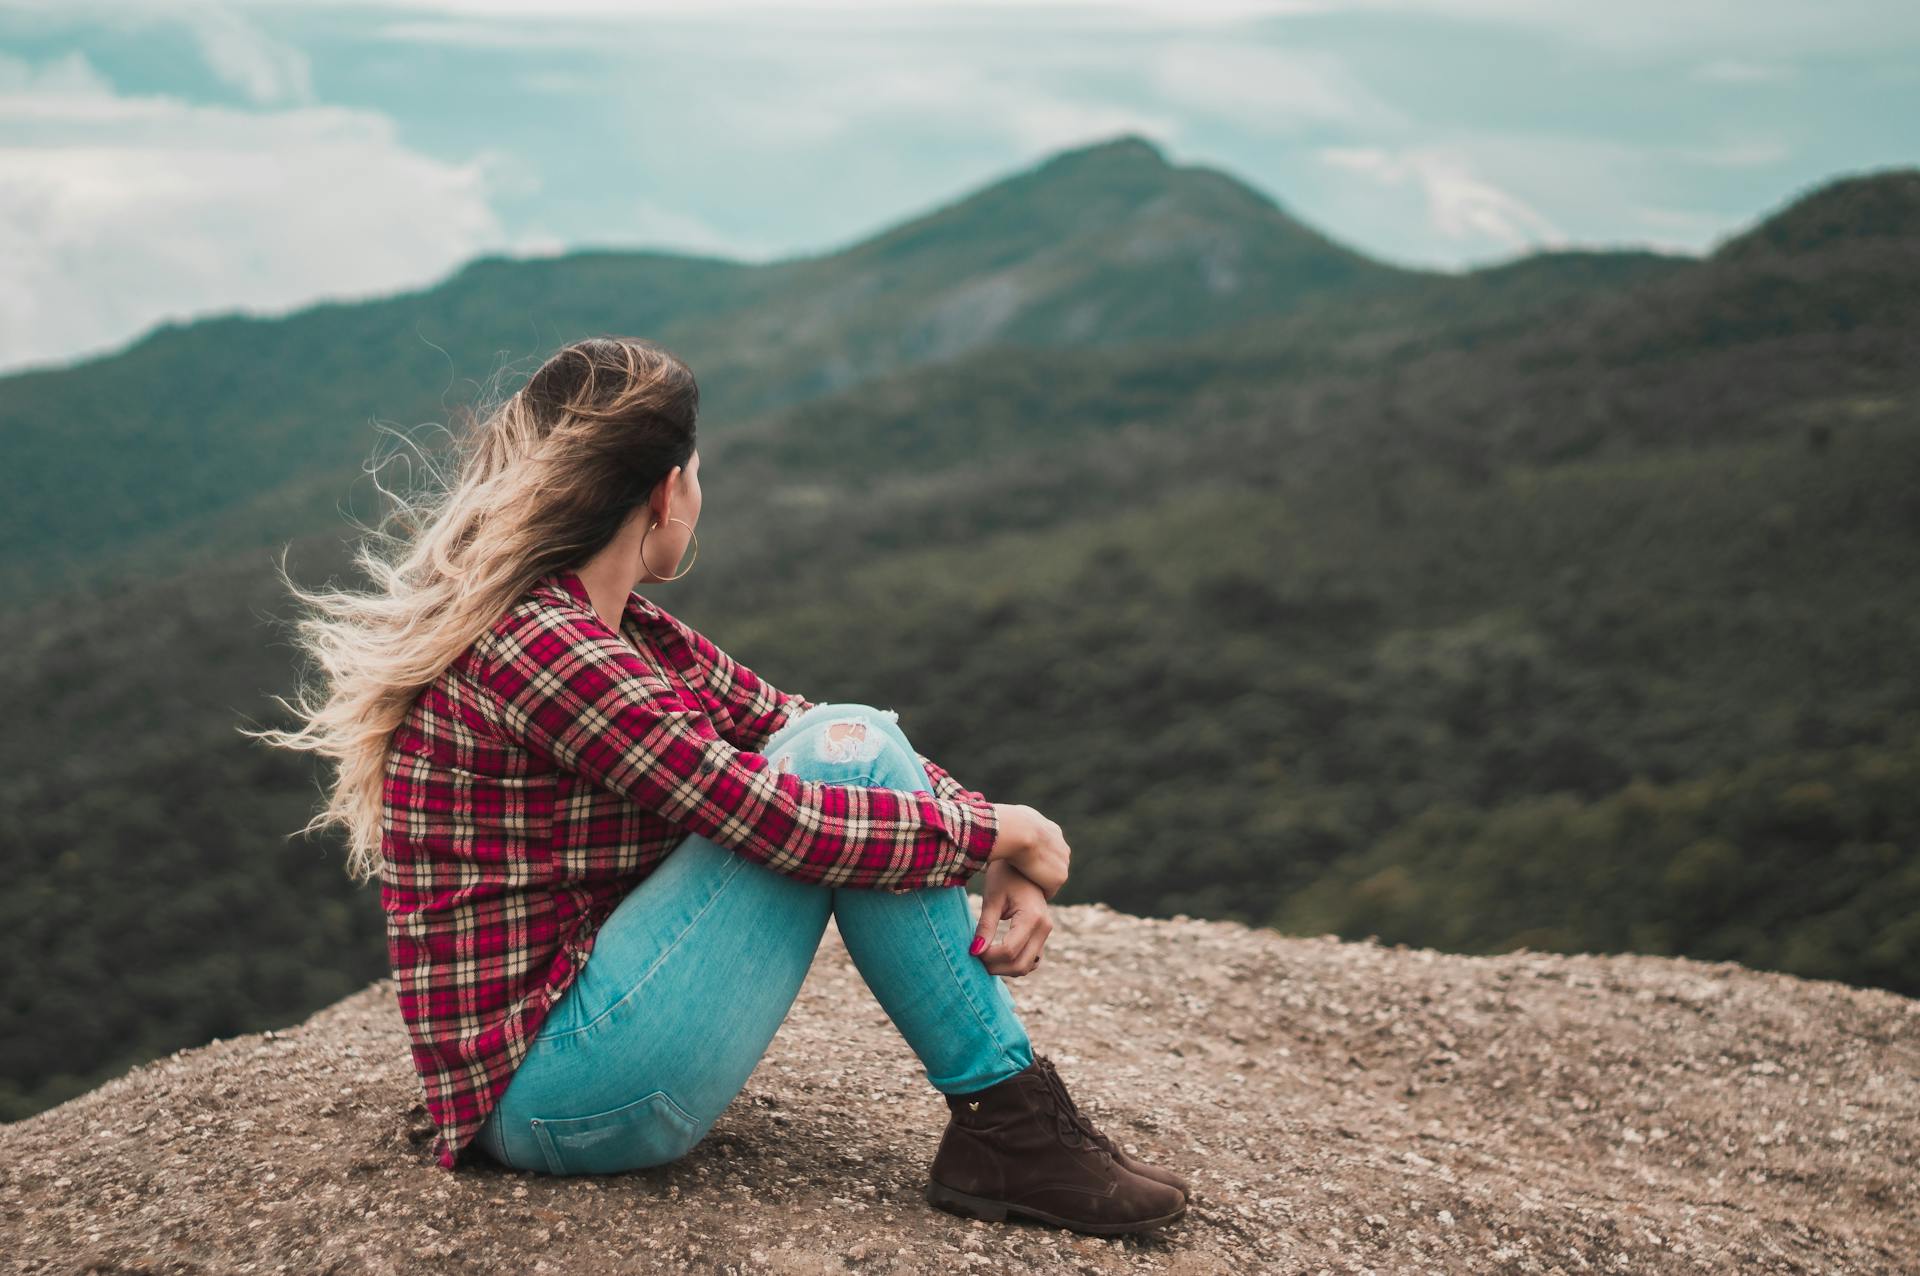 Vista lateral de una mujer sentada en el suelo con vistas a una colina | Fuente: Pexels